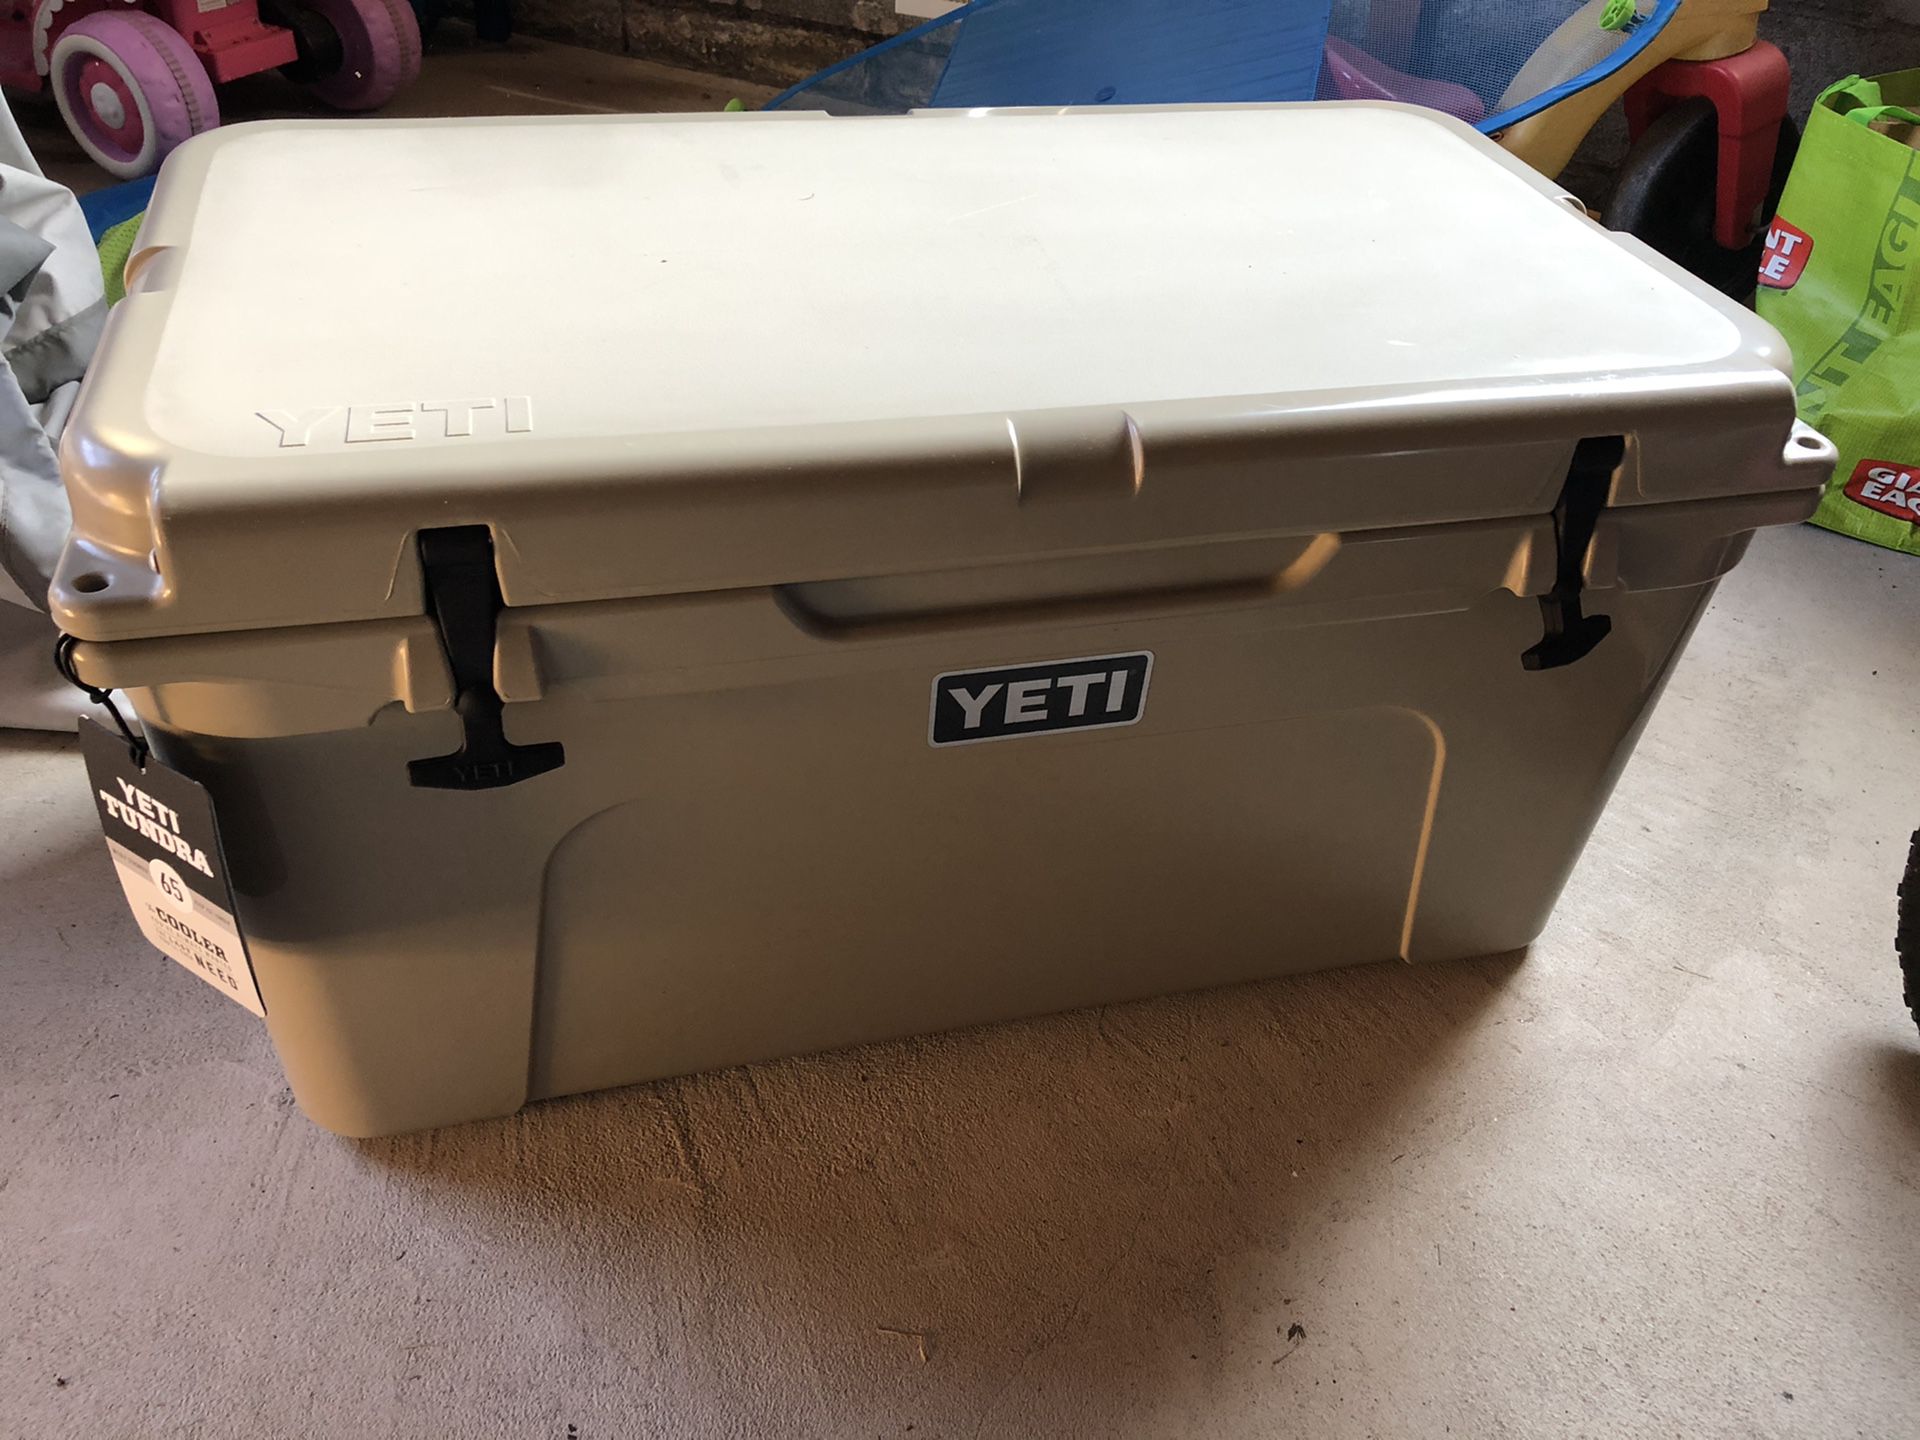 Brand new Yeti Tundra 65 cooler